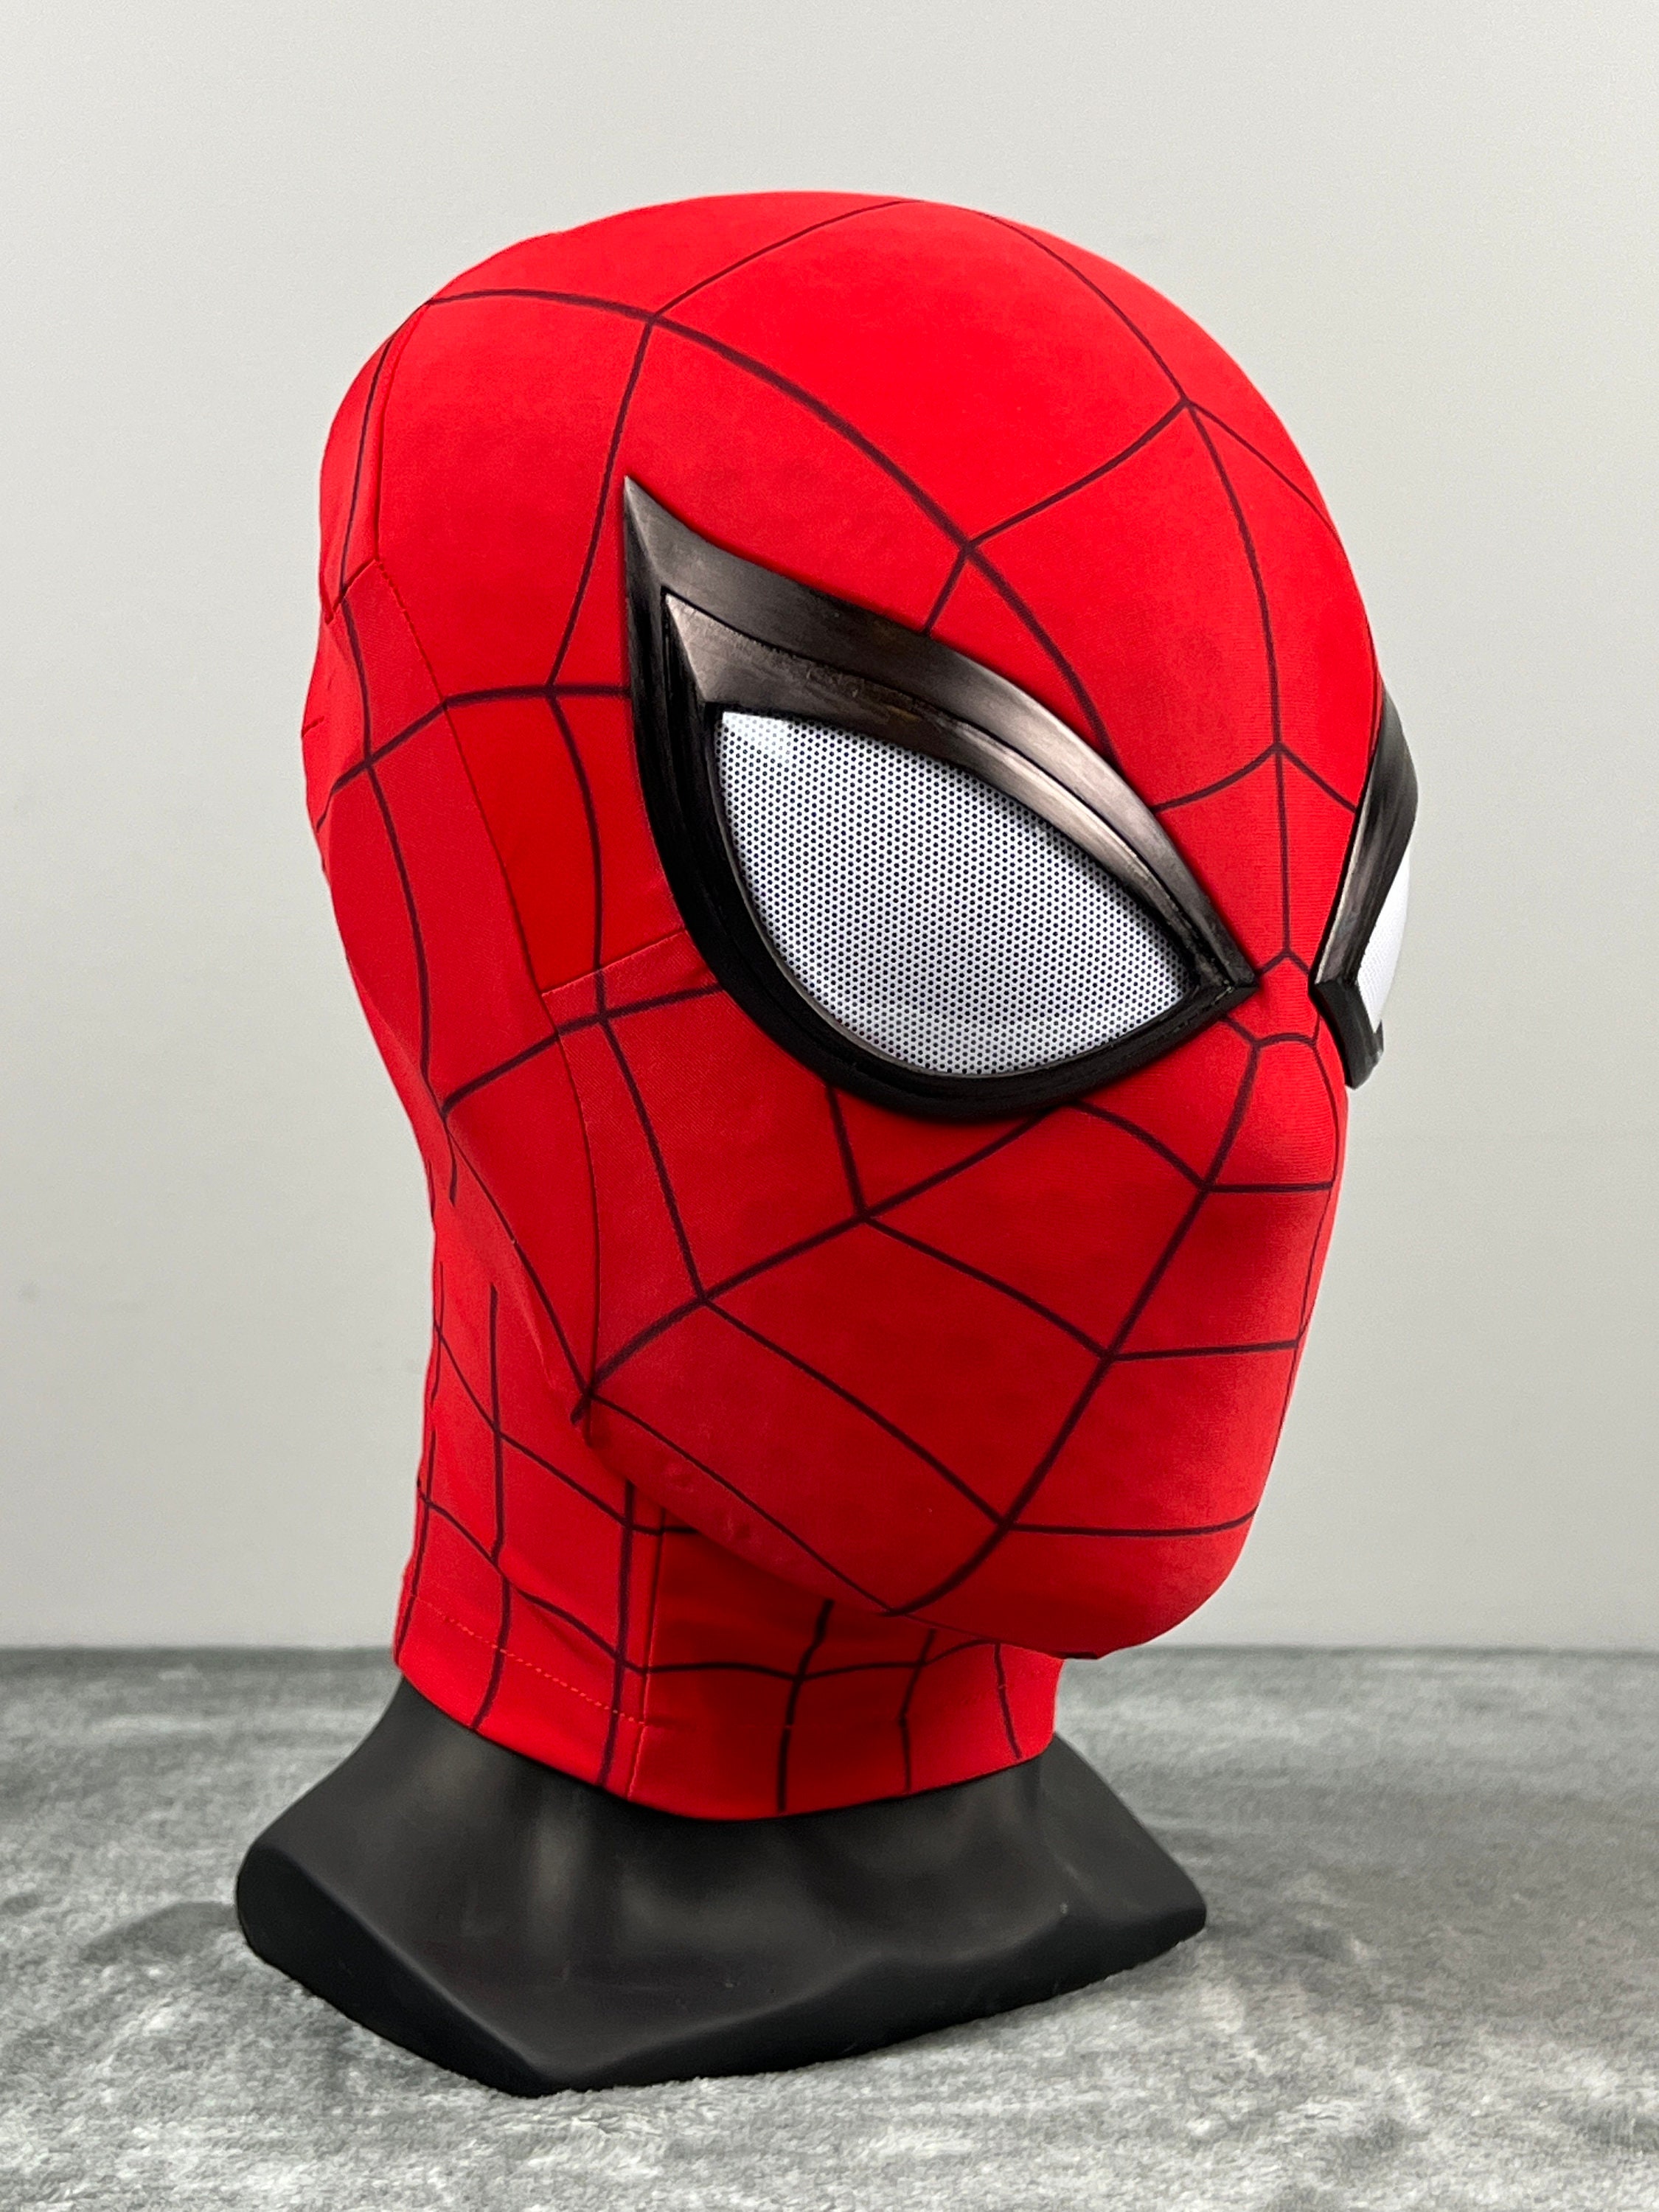 3D Spider-Man Mask, Spiderman Masks Spider Man Superhero Costume Mask for  Adult Kids, at Rs 605/piece, New Delhi